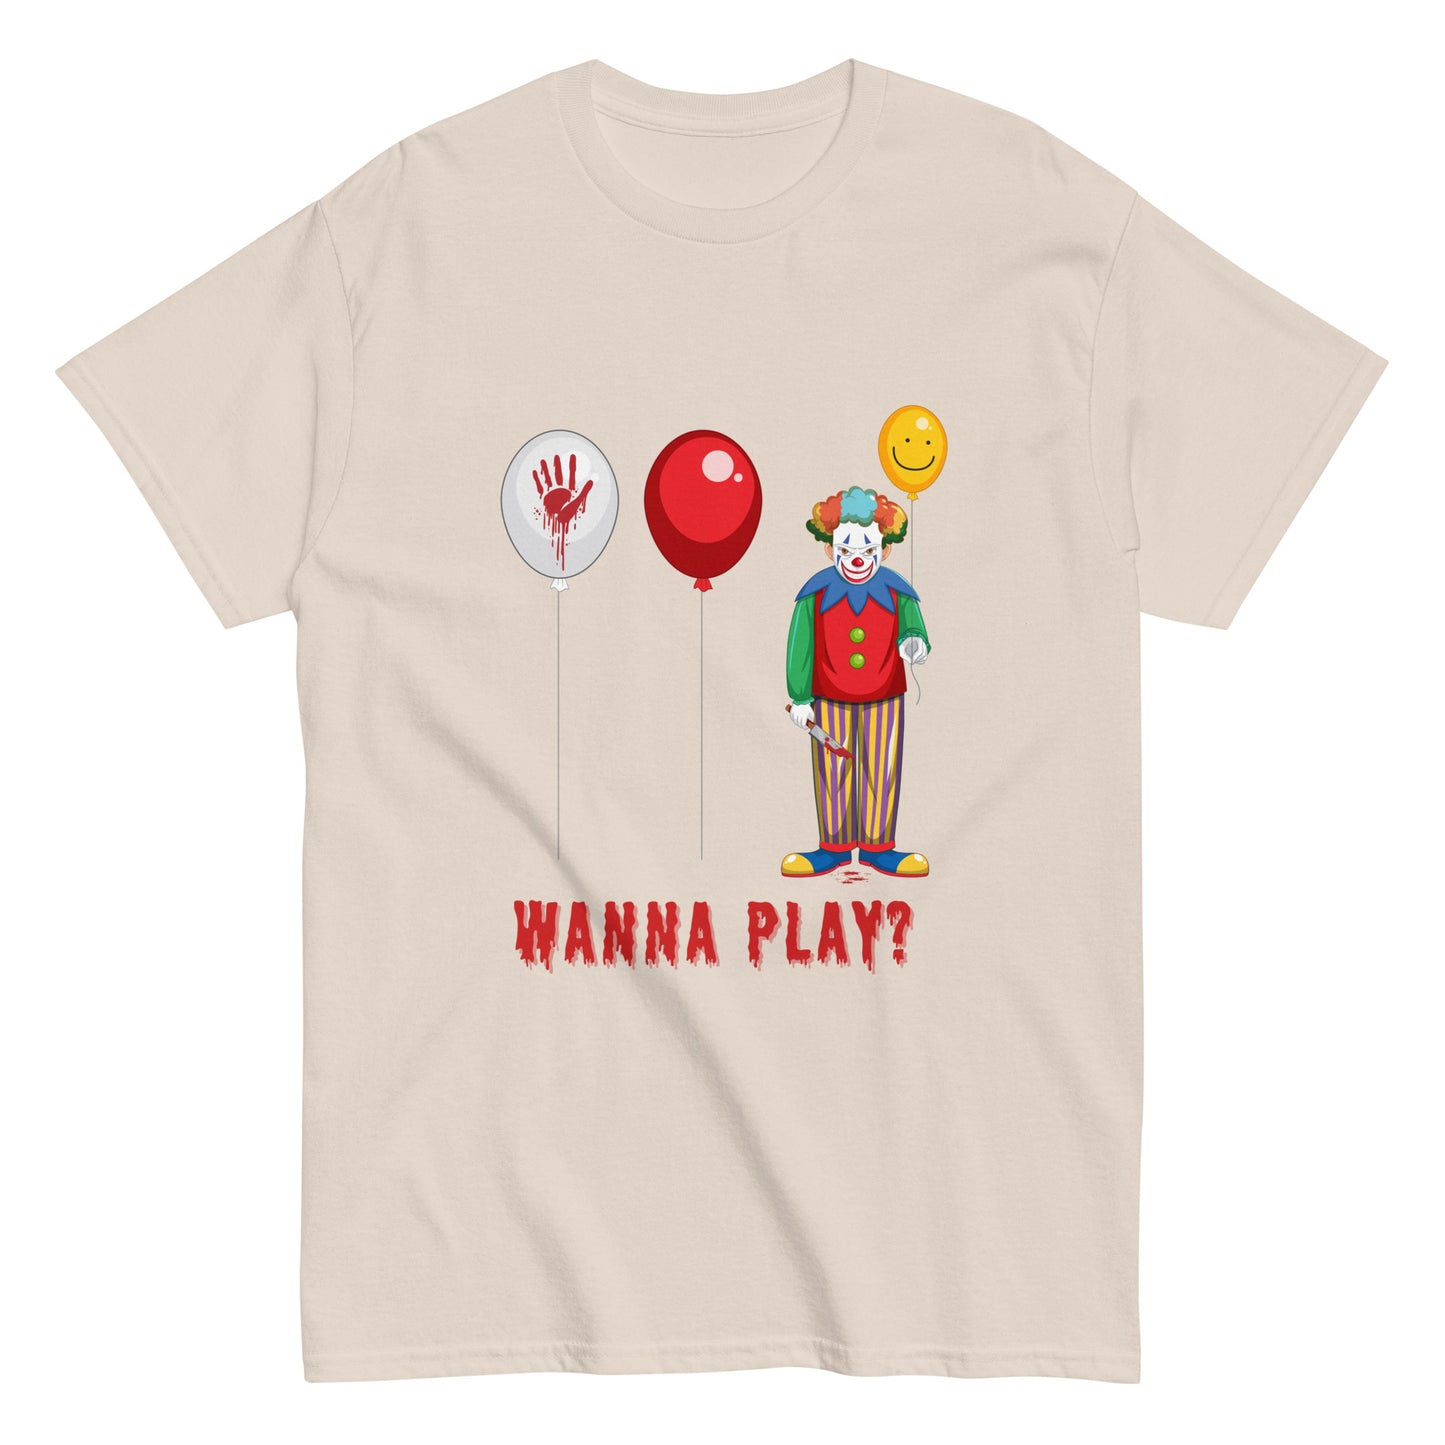 Wanna Play? T-Shirt